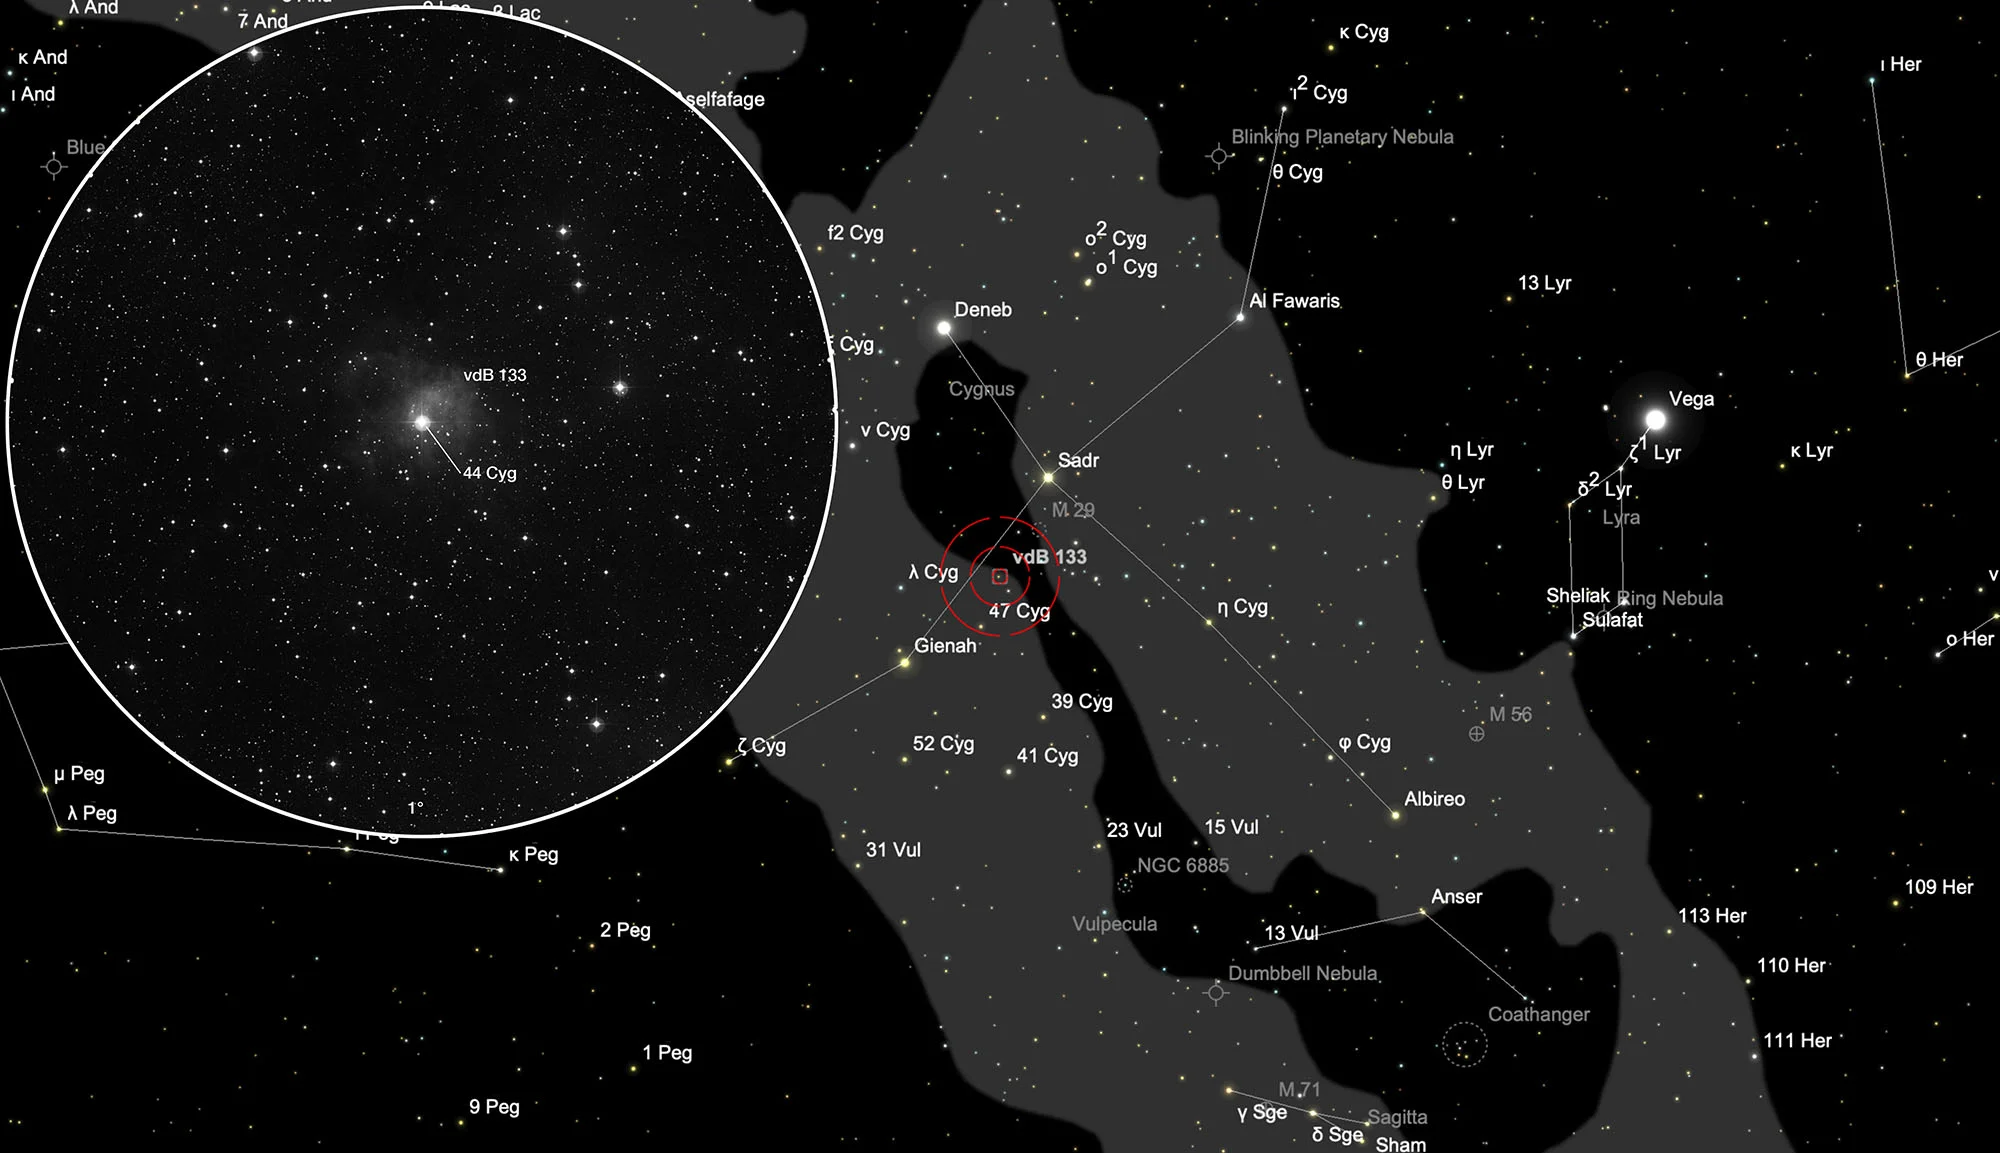 Chart 44 Cygni with Reflection Nebula vdB 133